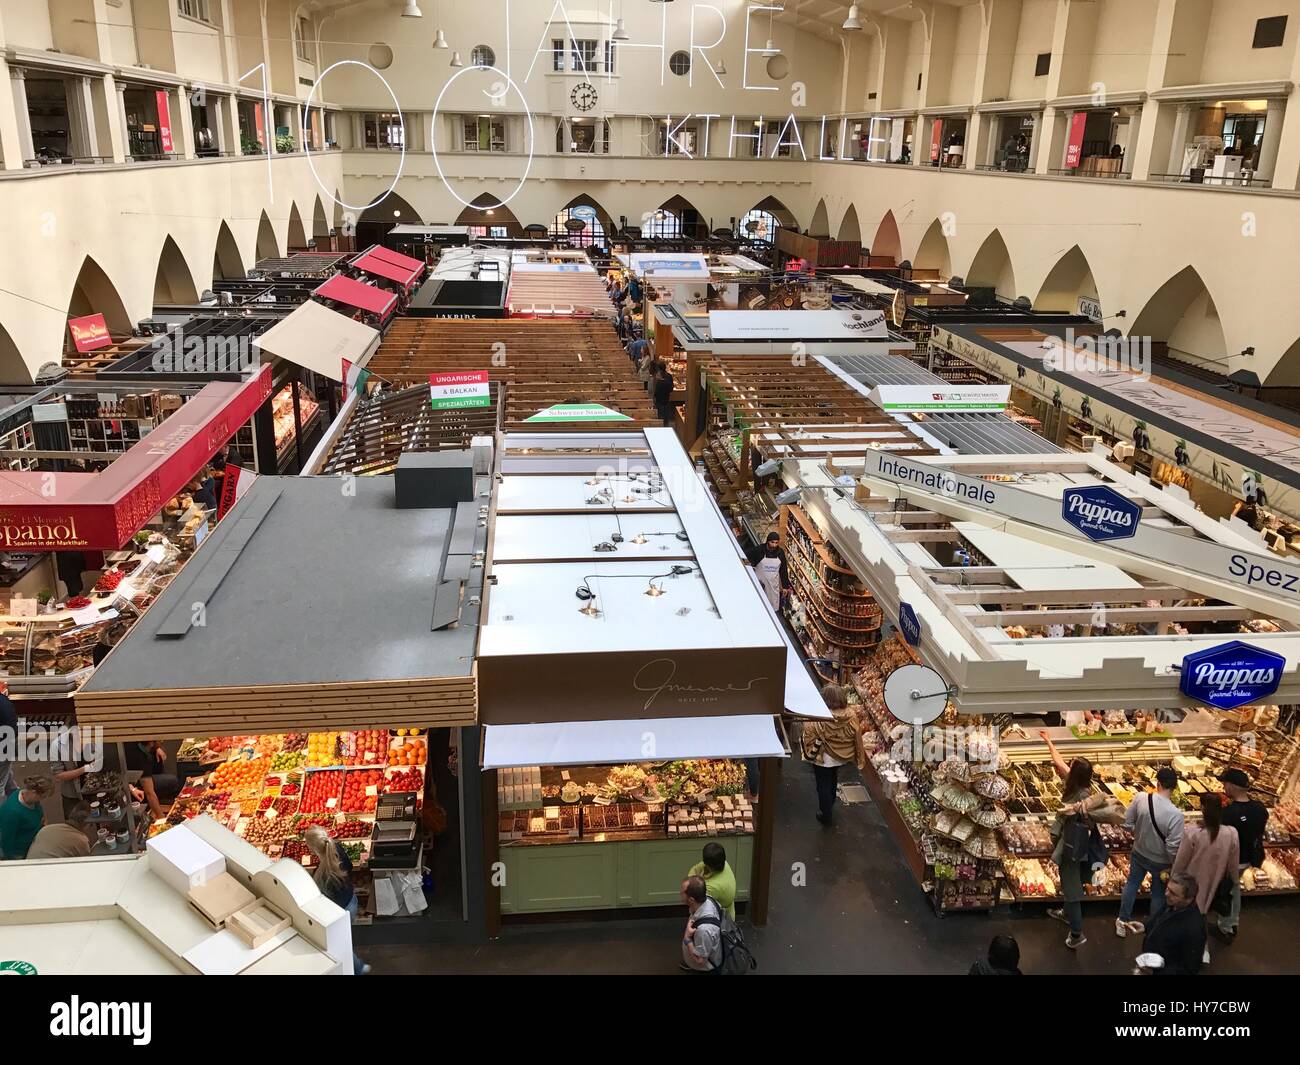 The Market Hall in Stuttgart Stock Photo